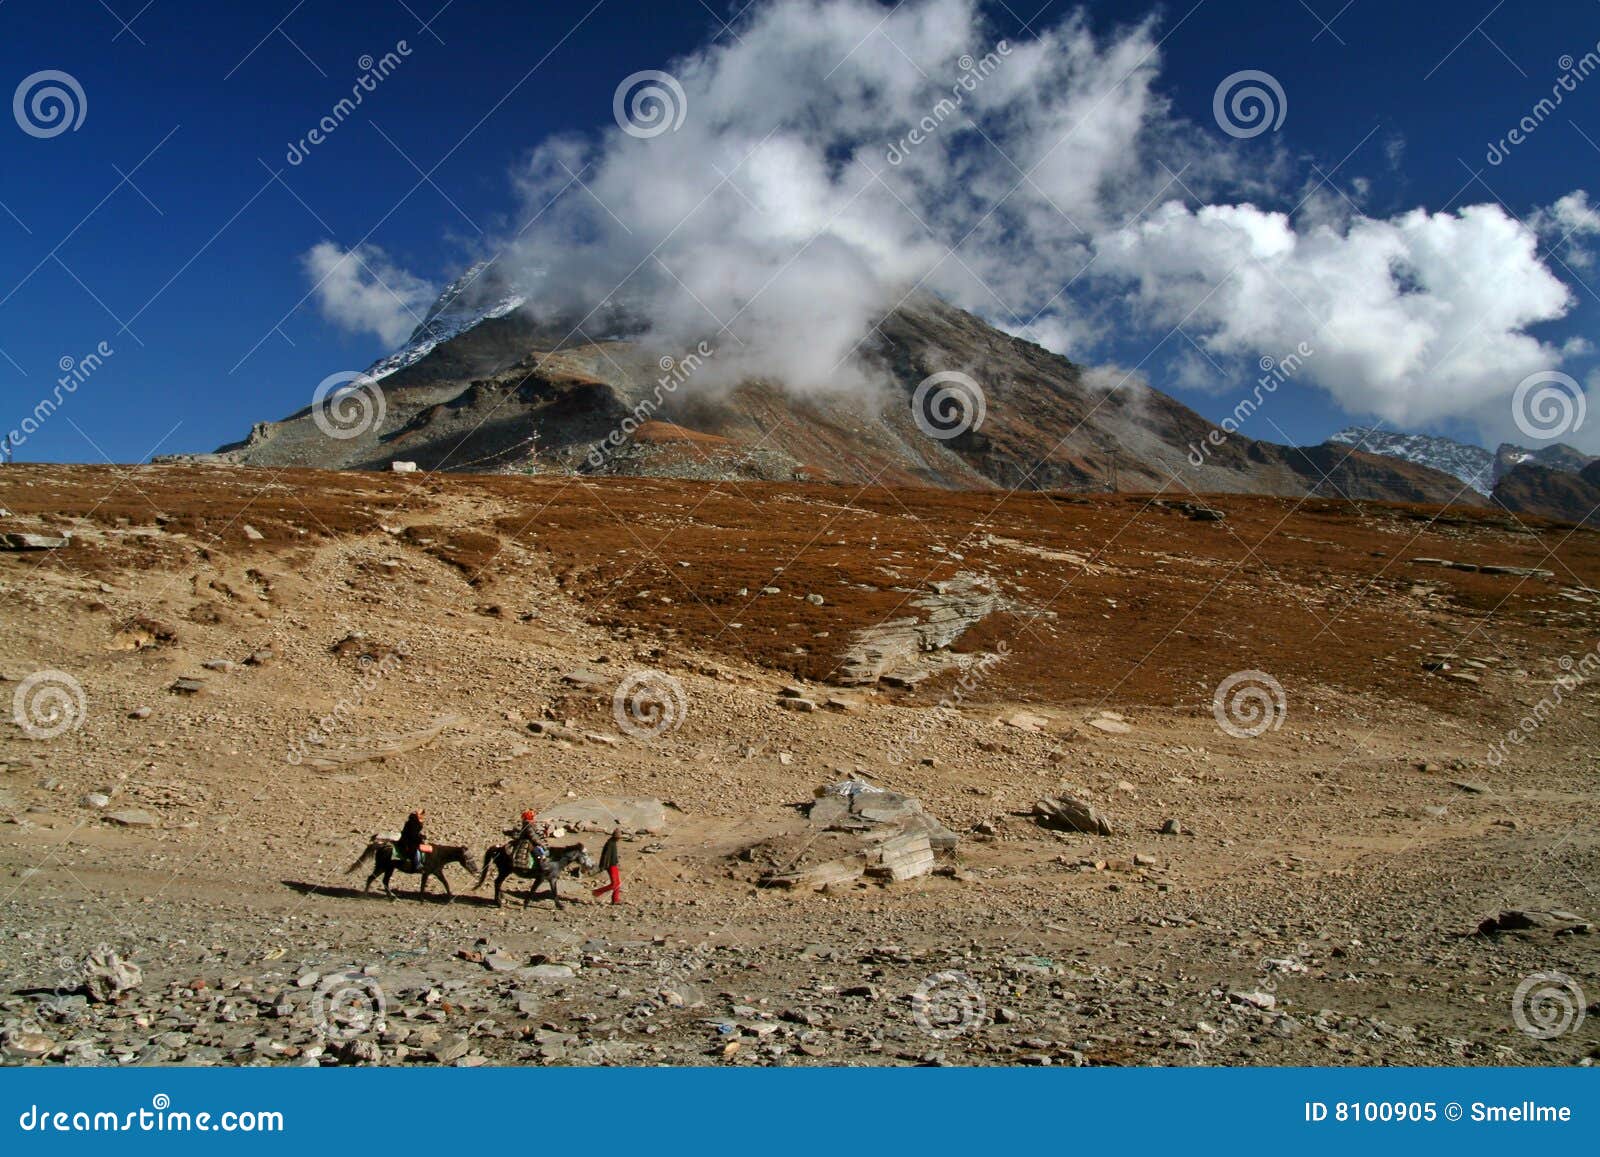 himalaya mountain top